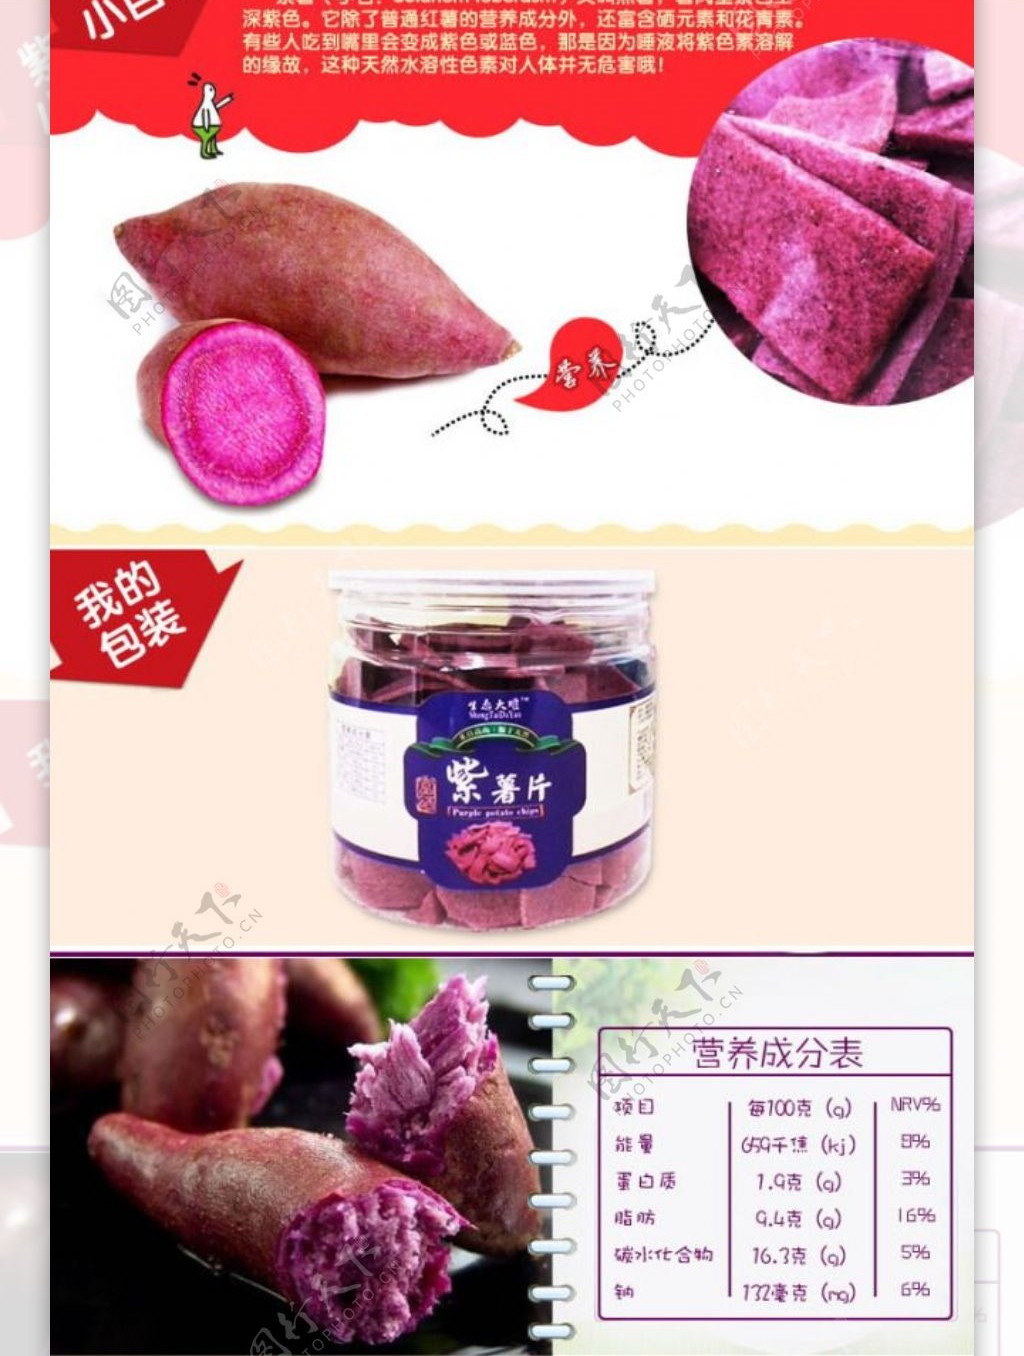 紫薯条淘宝详情效果图